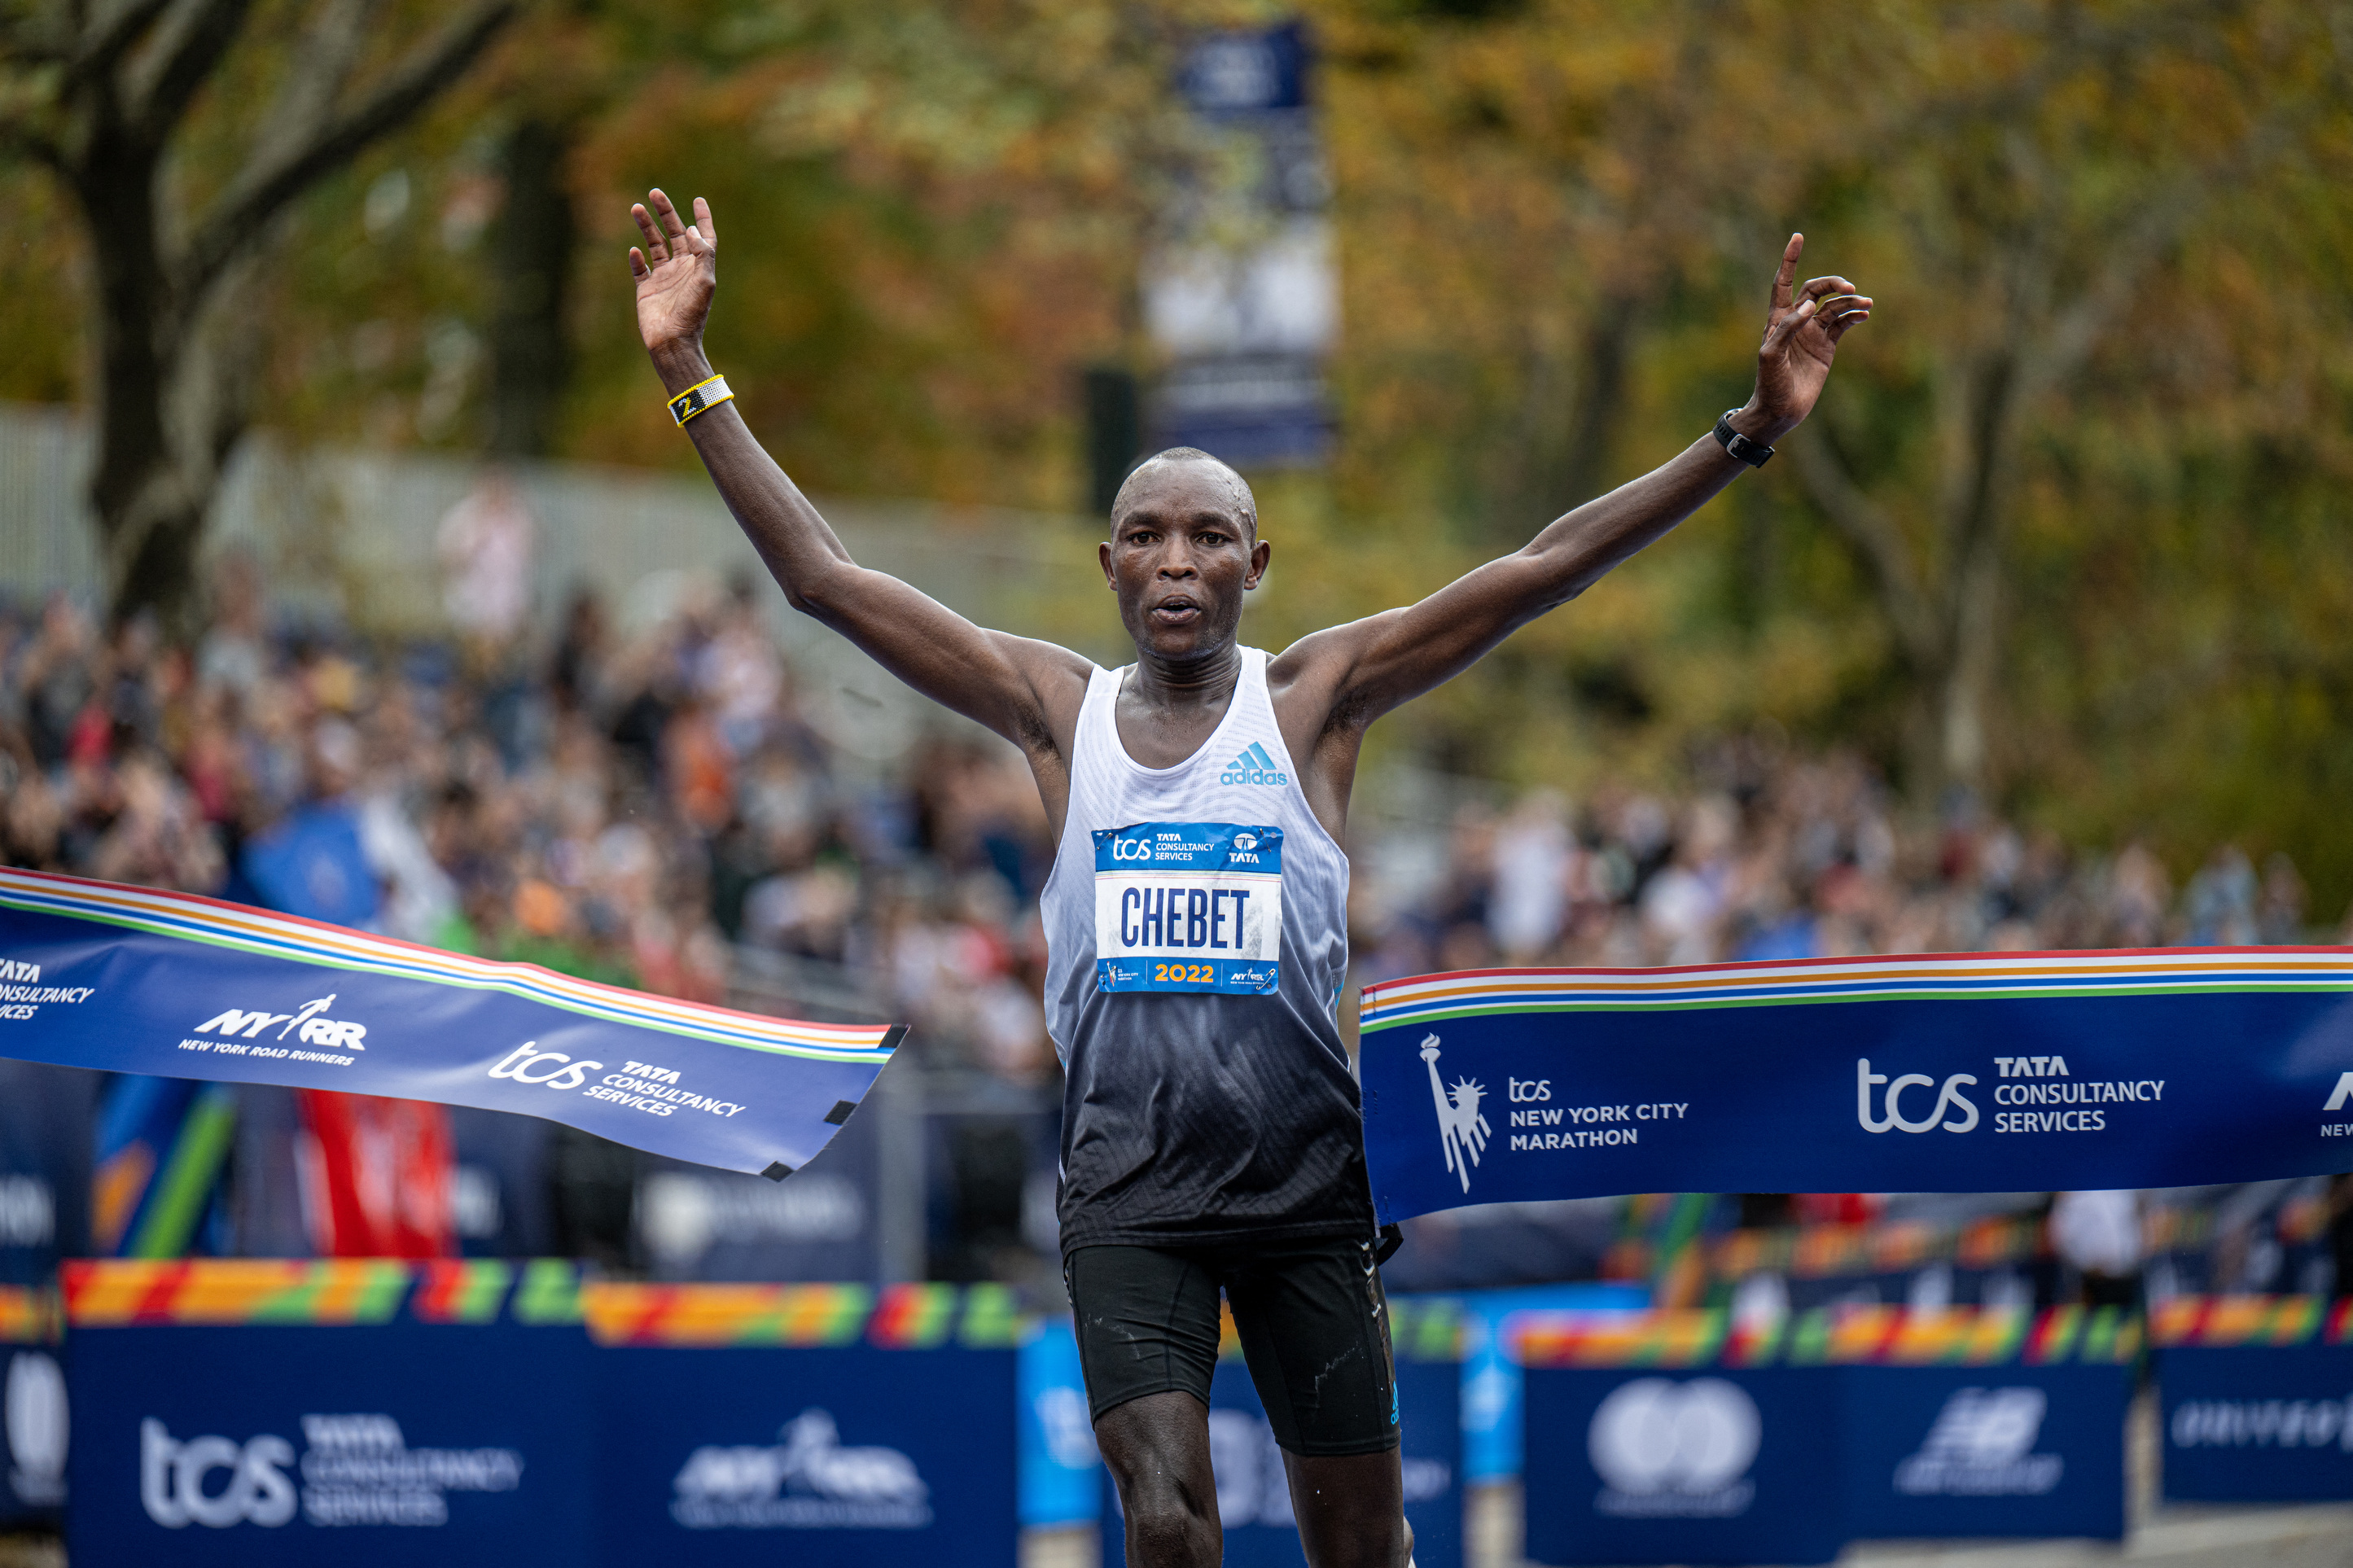 El keniata Evans Chebet fue el ganador de la maratón de Nueva York (Mark Smith-USA TODAY Sports)